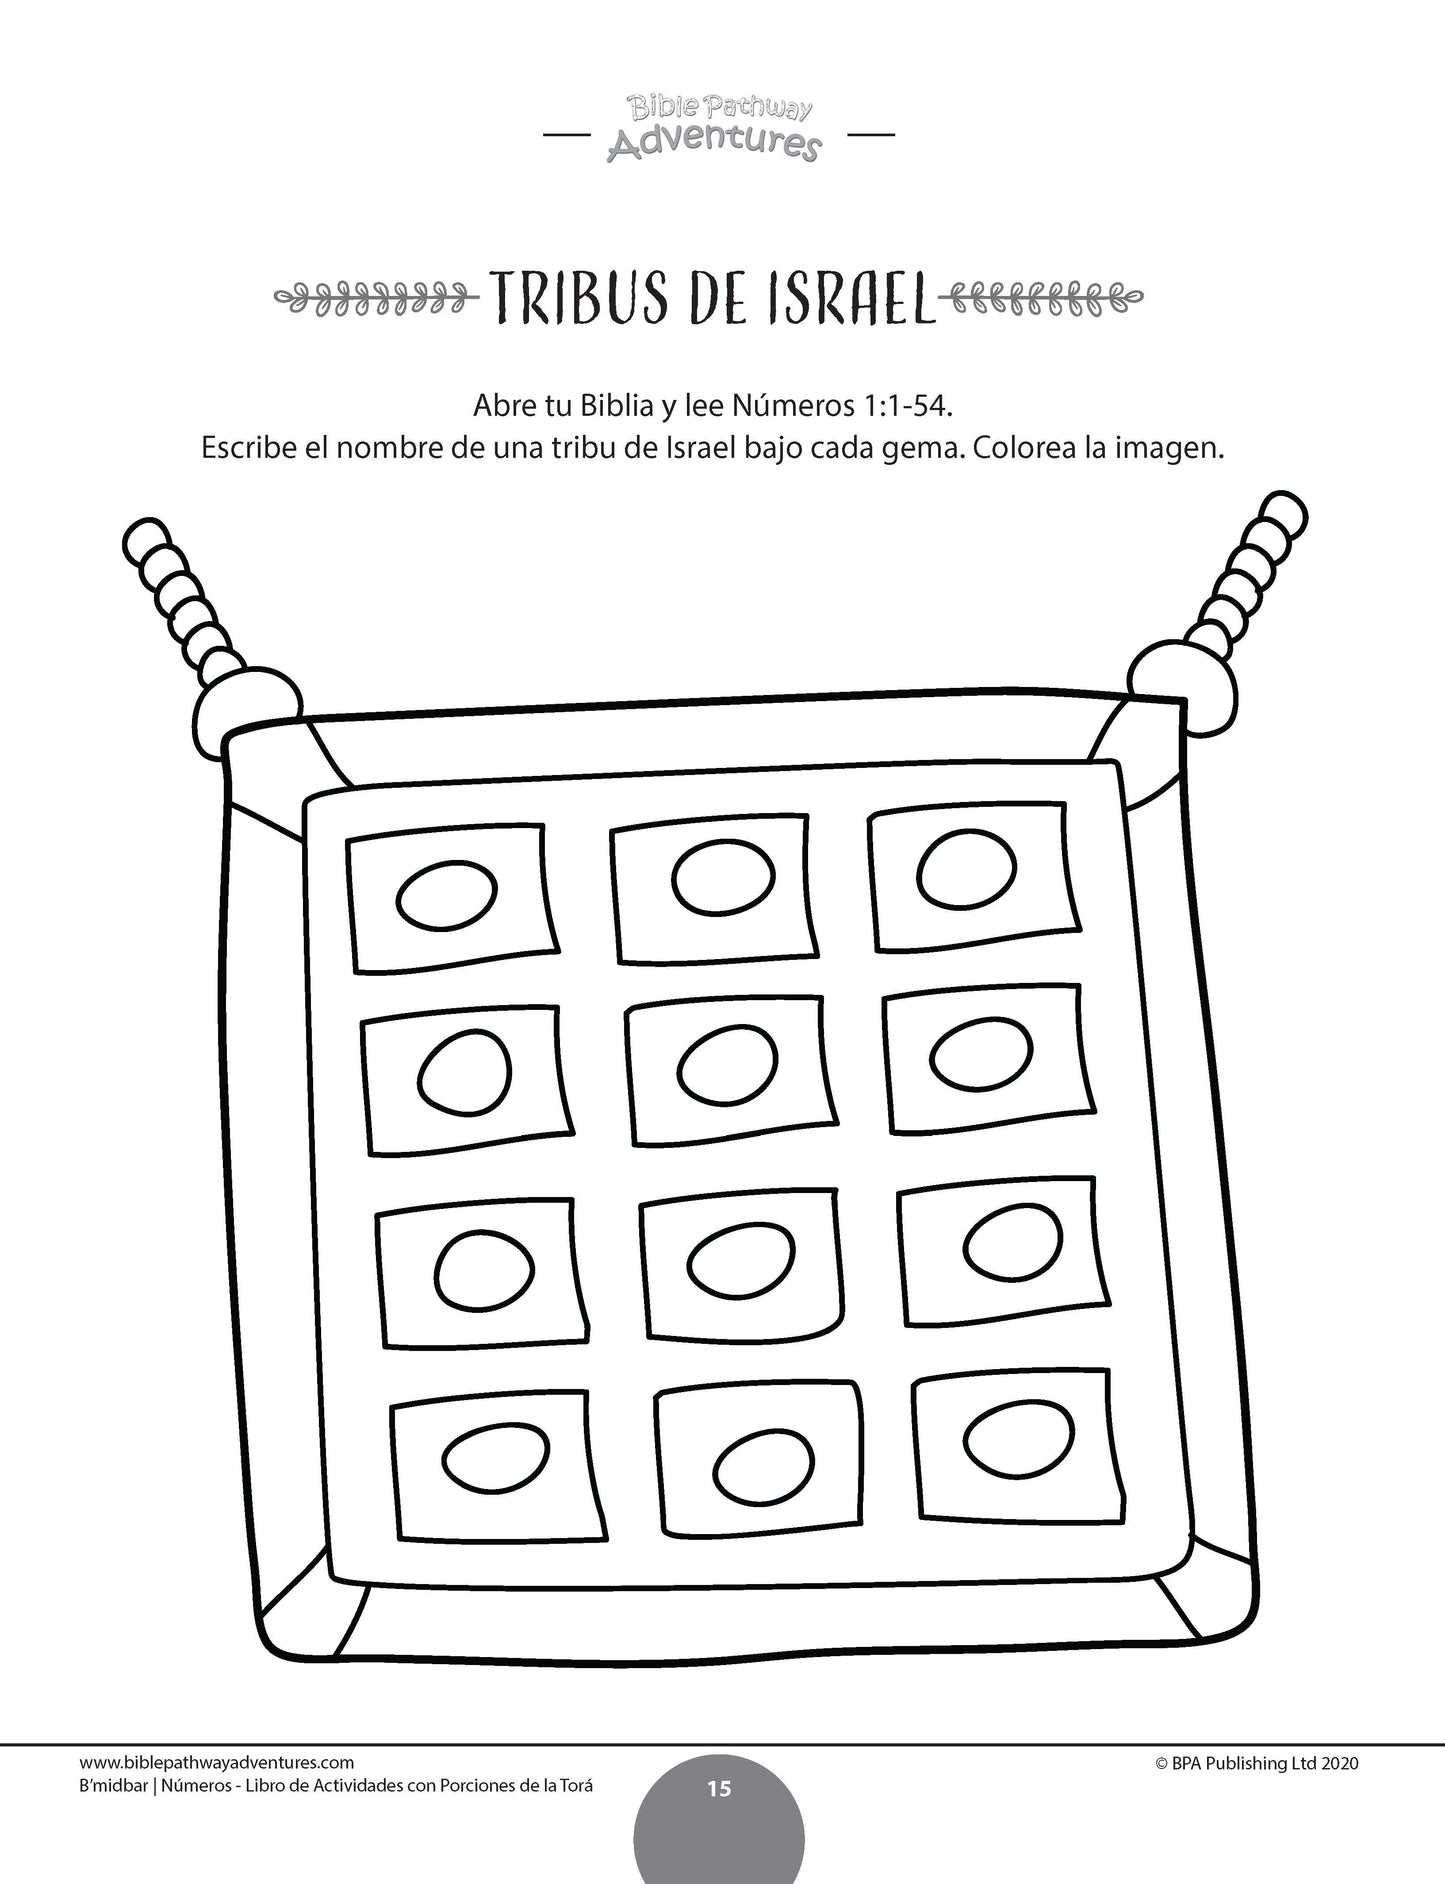 B’midbar / Números: Libro de actividades con porciones de la Torá (paperback)